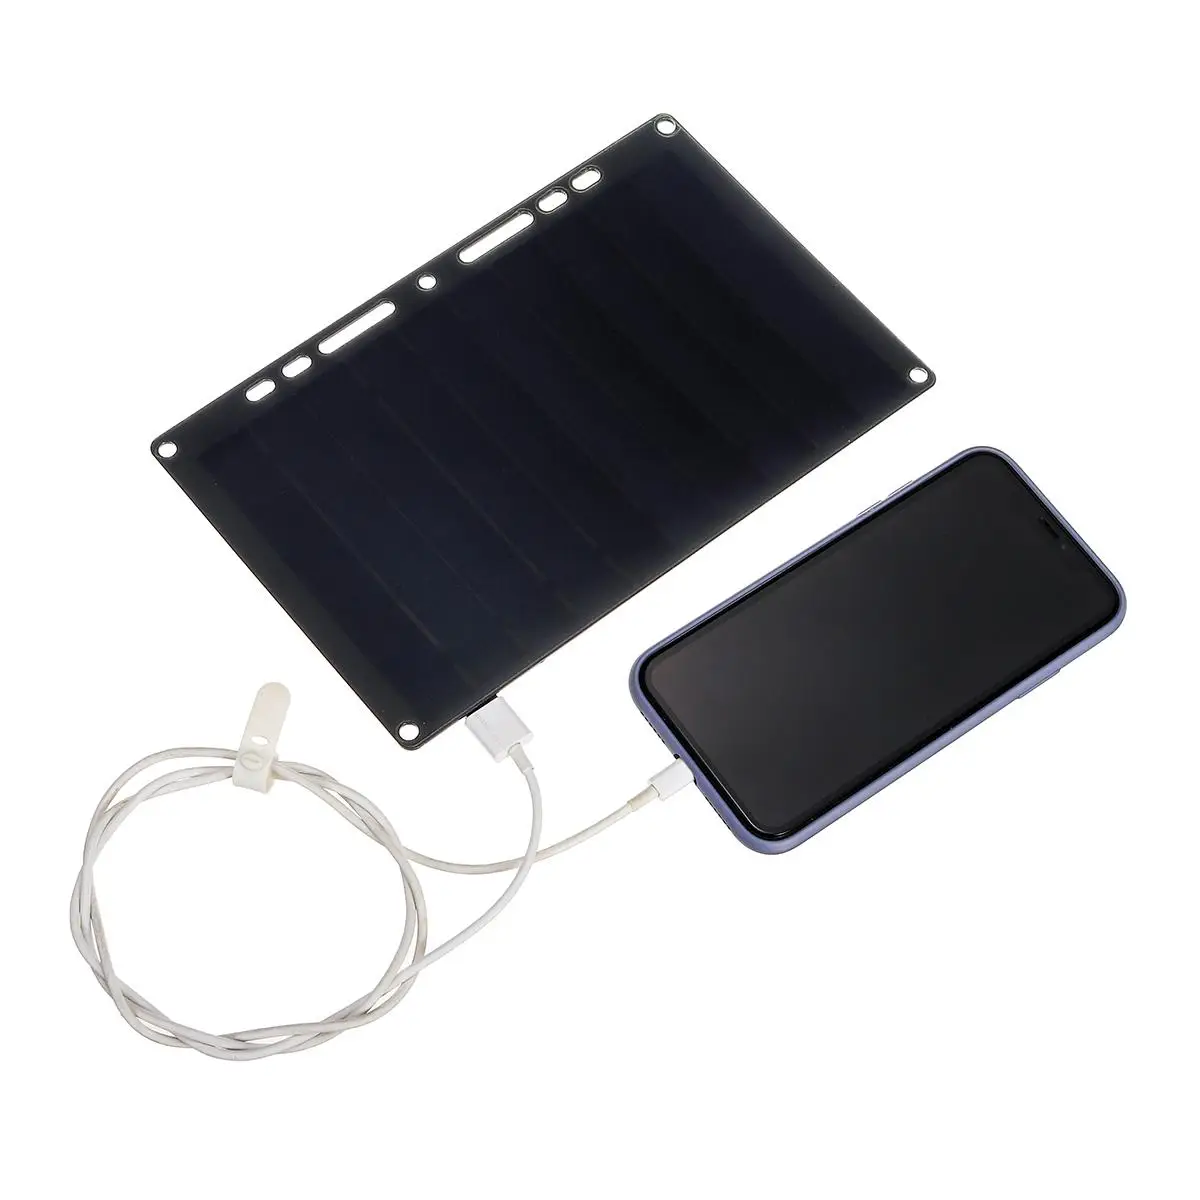 LEORY 10W 6V 1.7A фотоэлектрические солнечные батареи с зарядным устройством USB Полугибкие монокристаллические солнечные панели для мобильного телефона